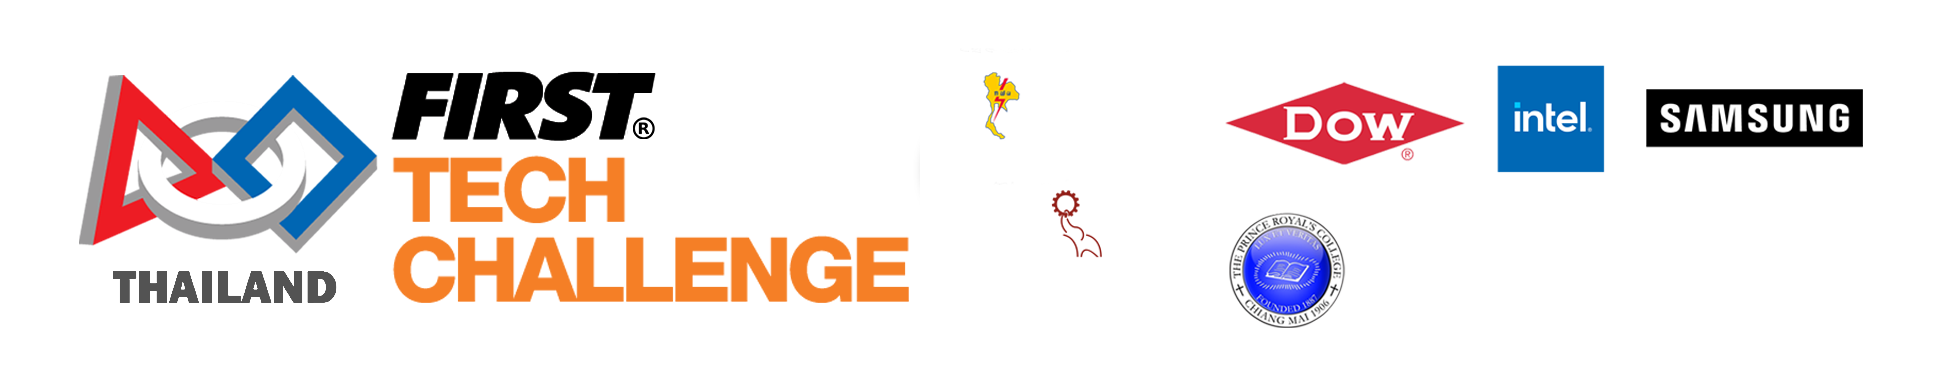 FIRST Tech Challenge THAILAND